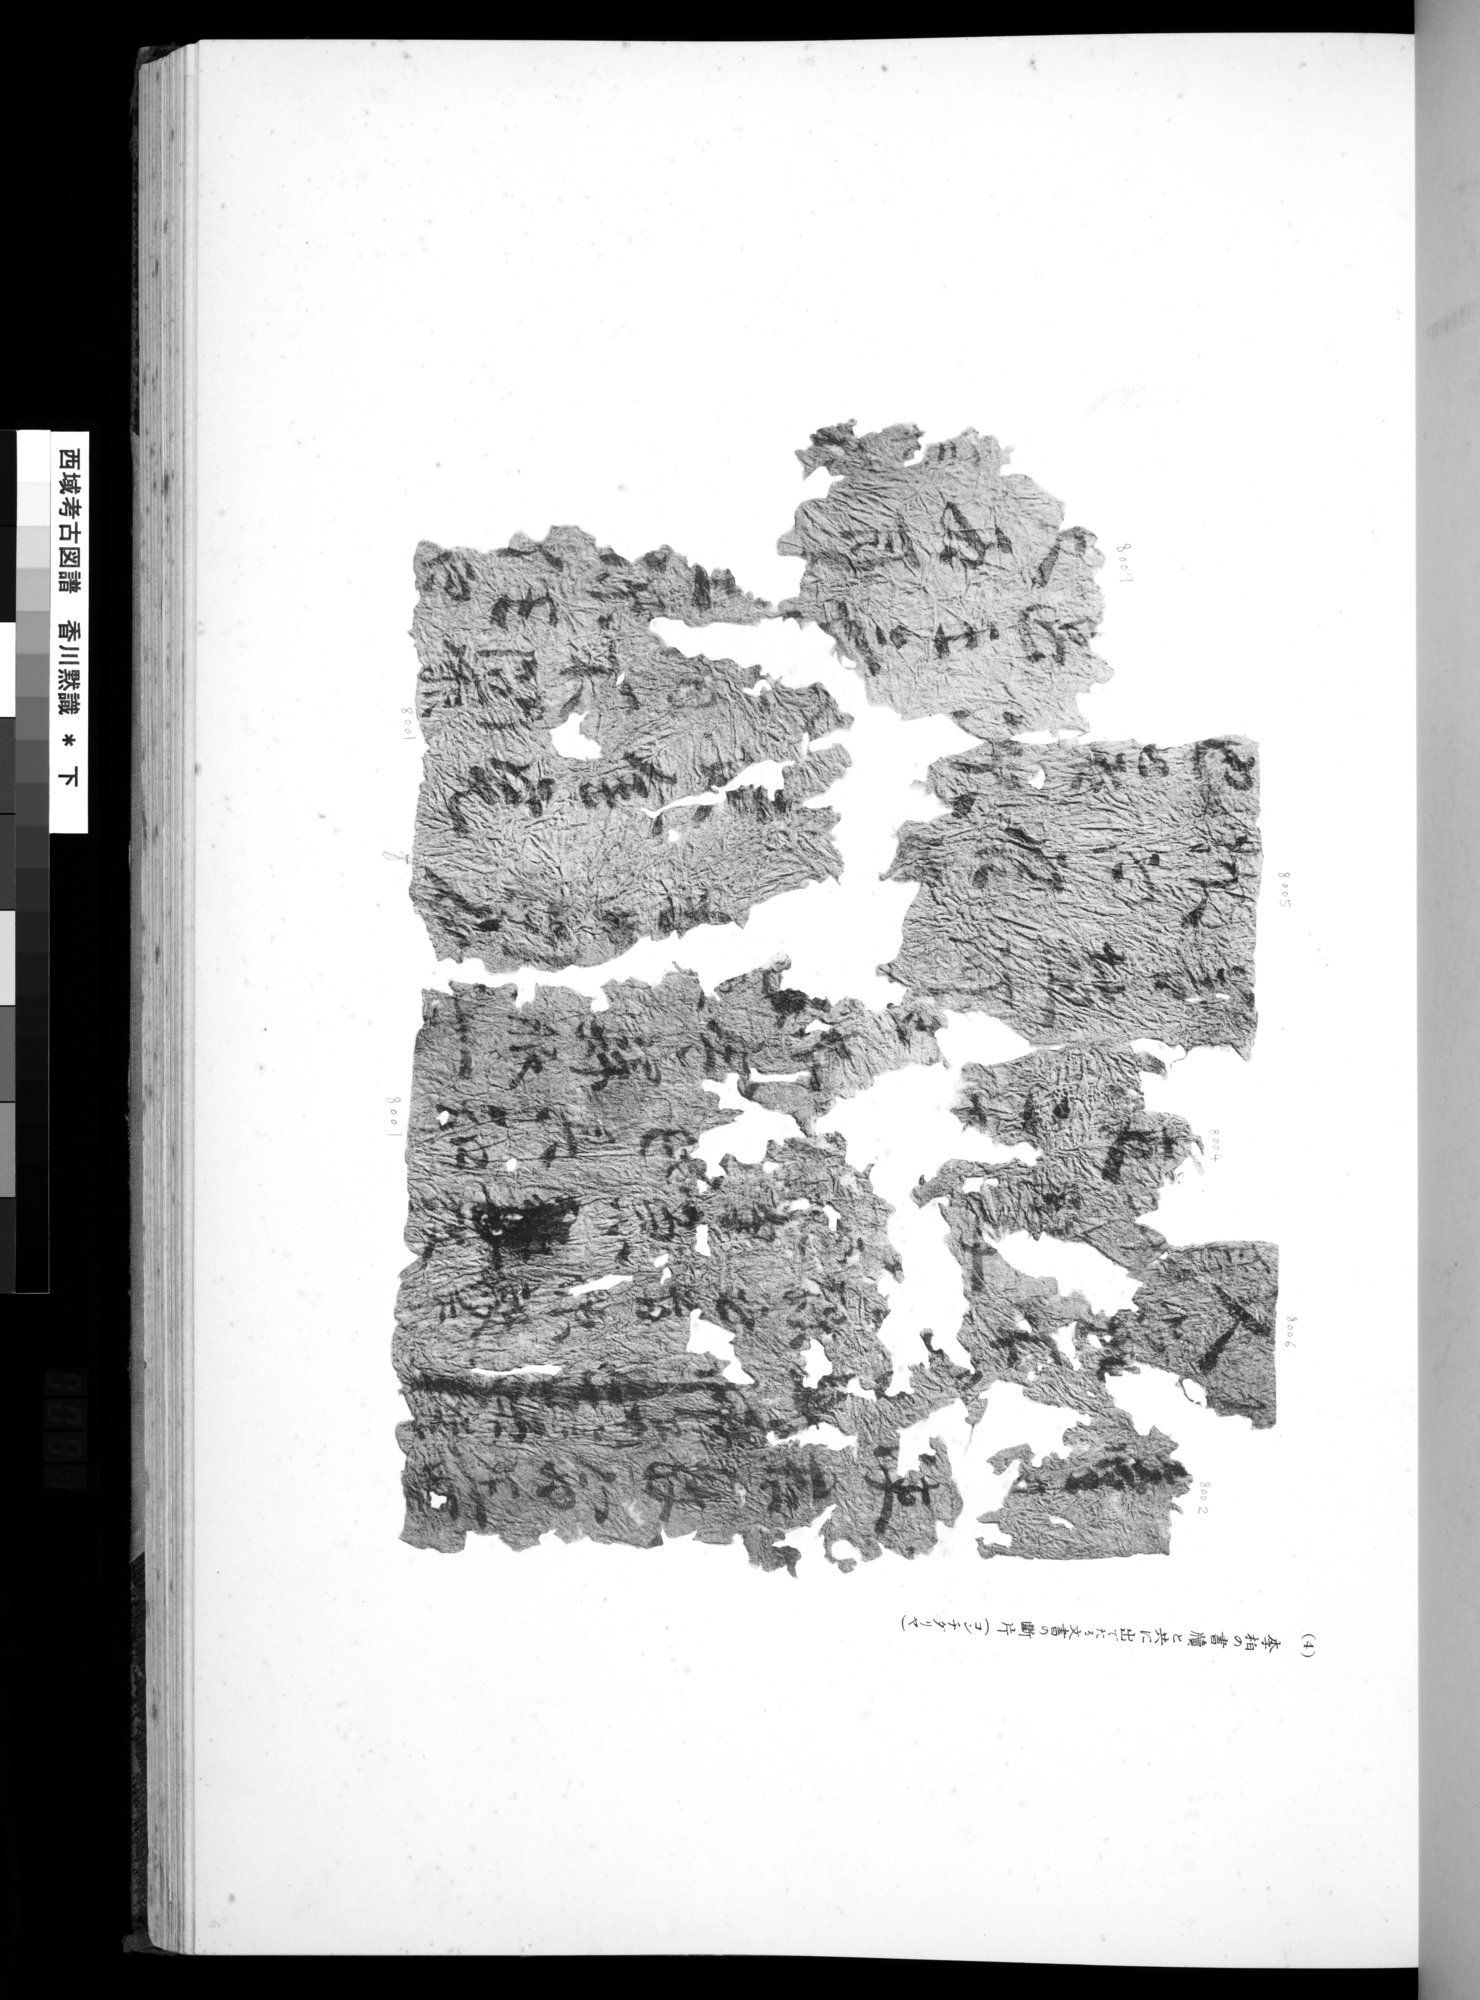 西域考古図譜 : vol.2 / Page 181 (Grayscale High Resolution Image)